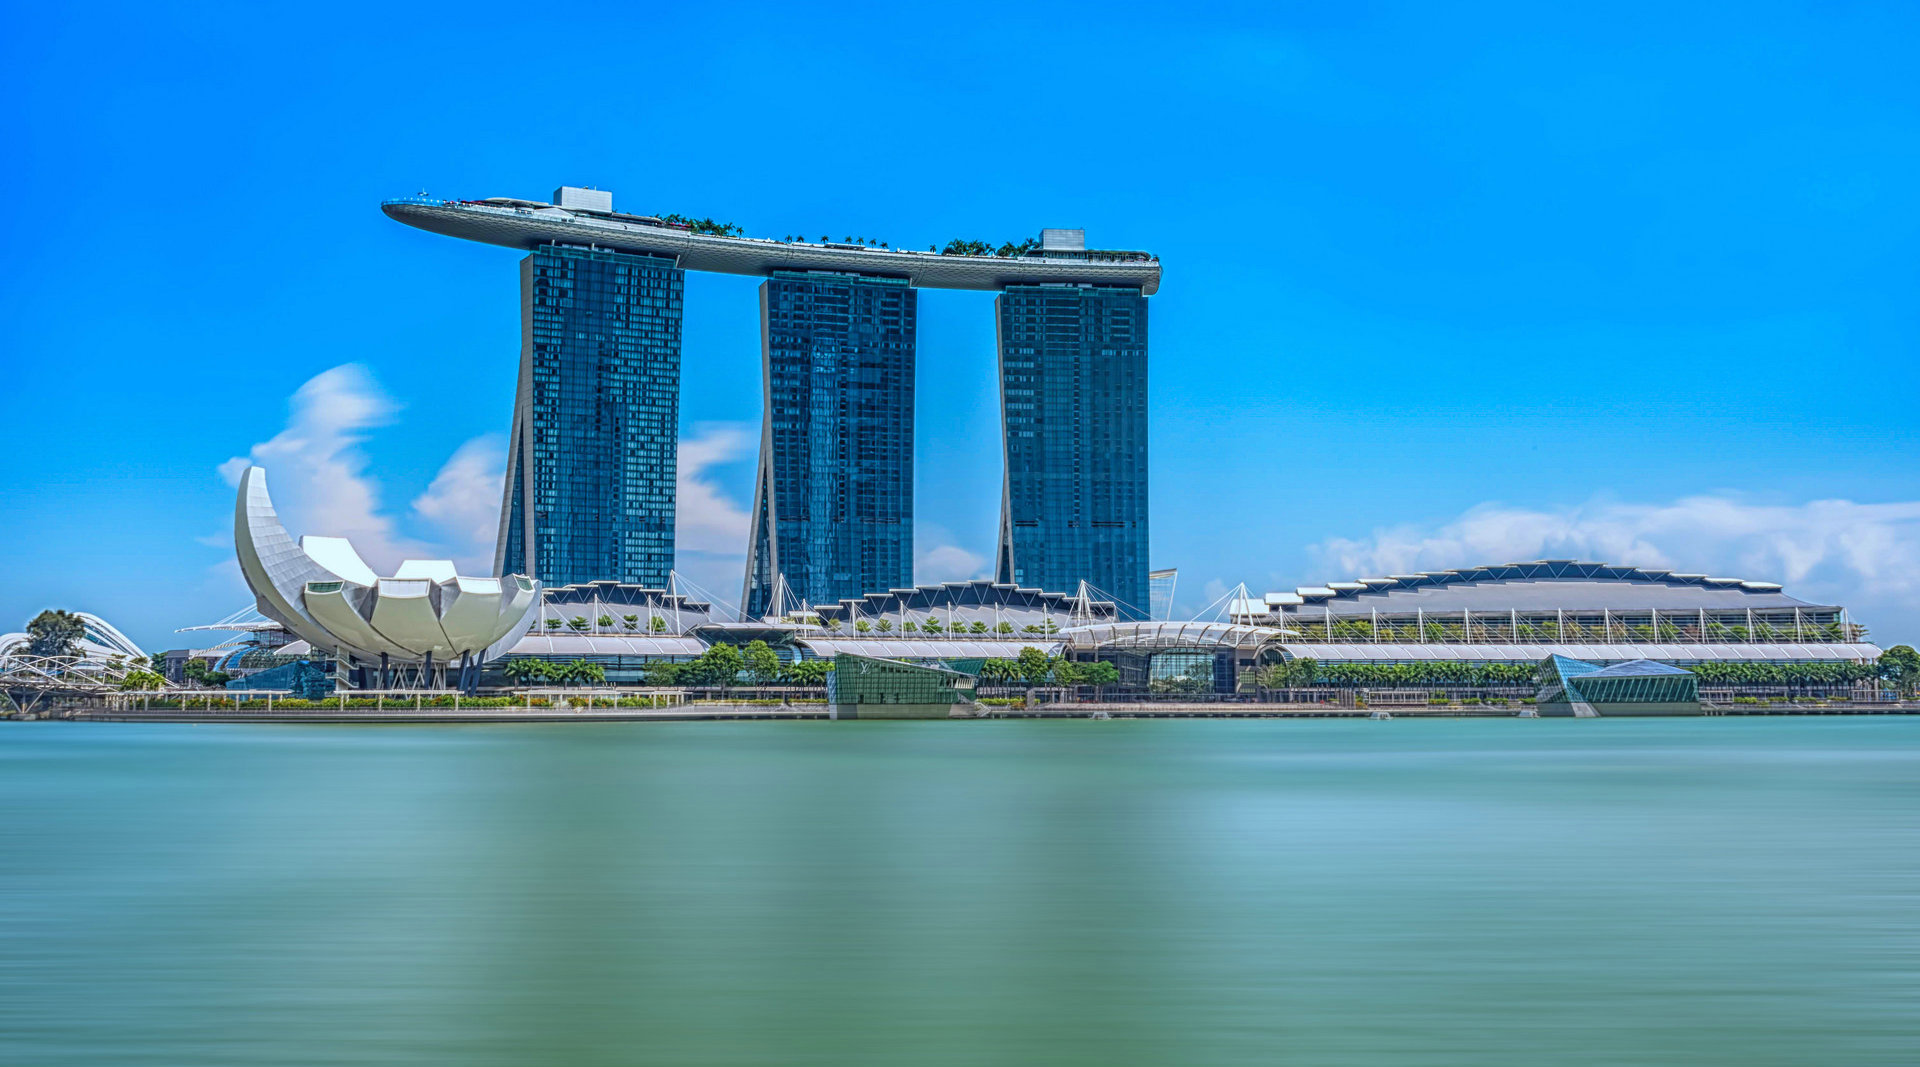 供应链金融的新未来 | 2019年亚太地区供应链金融峰会将在新加坡召开